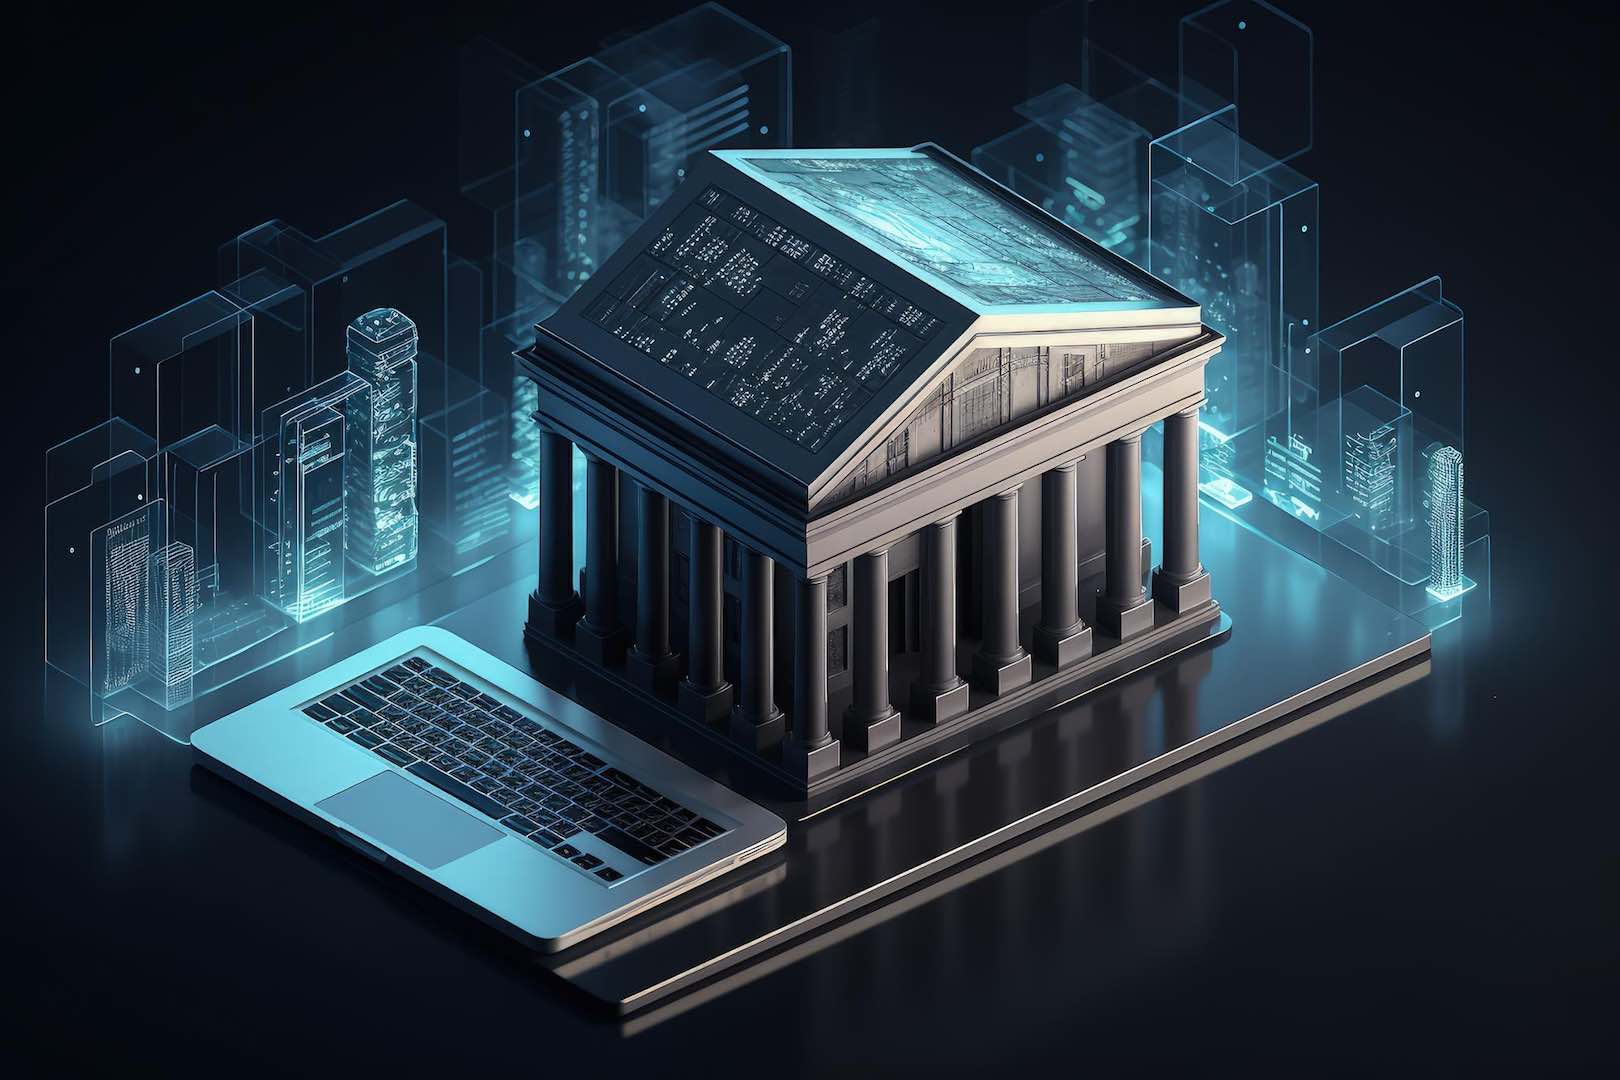 مصر للابتكار الرقمي تنال الموافقة المبدئية من البنك المركزي لتأسيس أول بنك رقمي